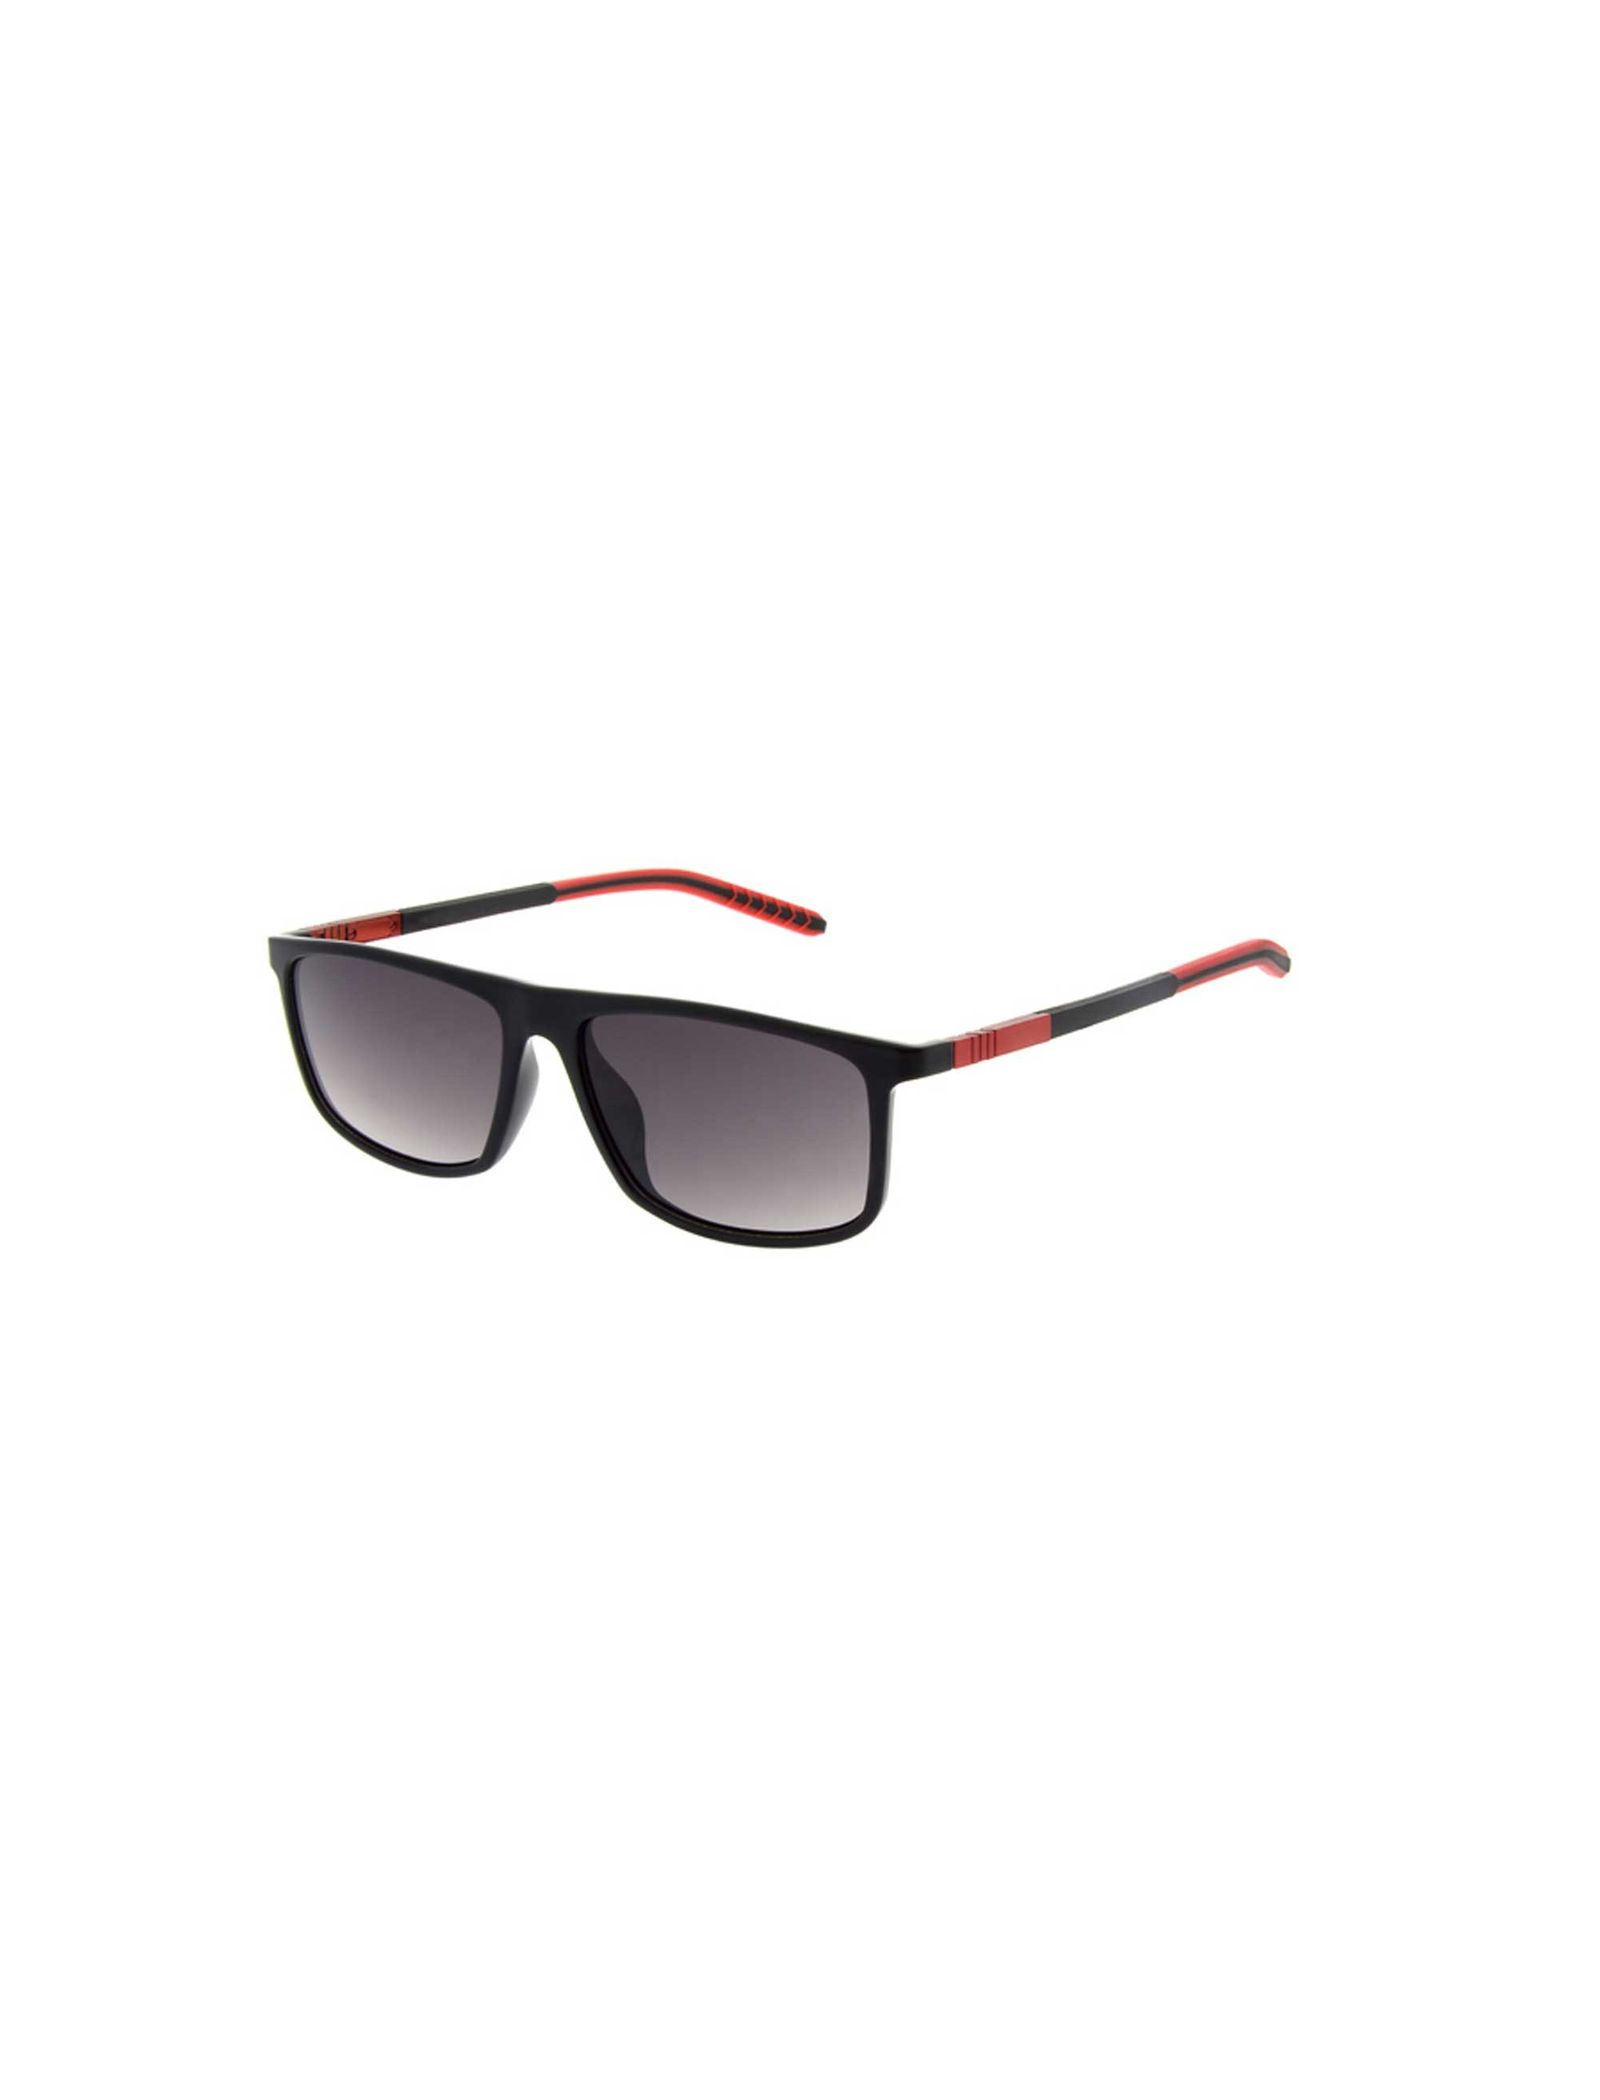 عینک آفتابی ویفرر مردانه - اسپاین - مشکي/قرمز - 2